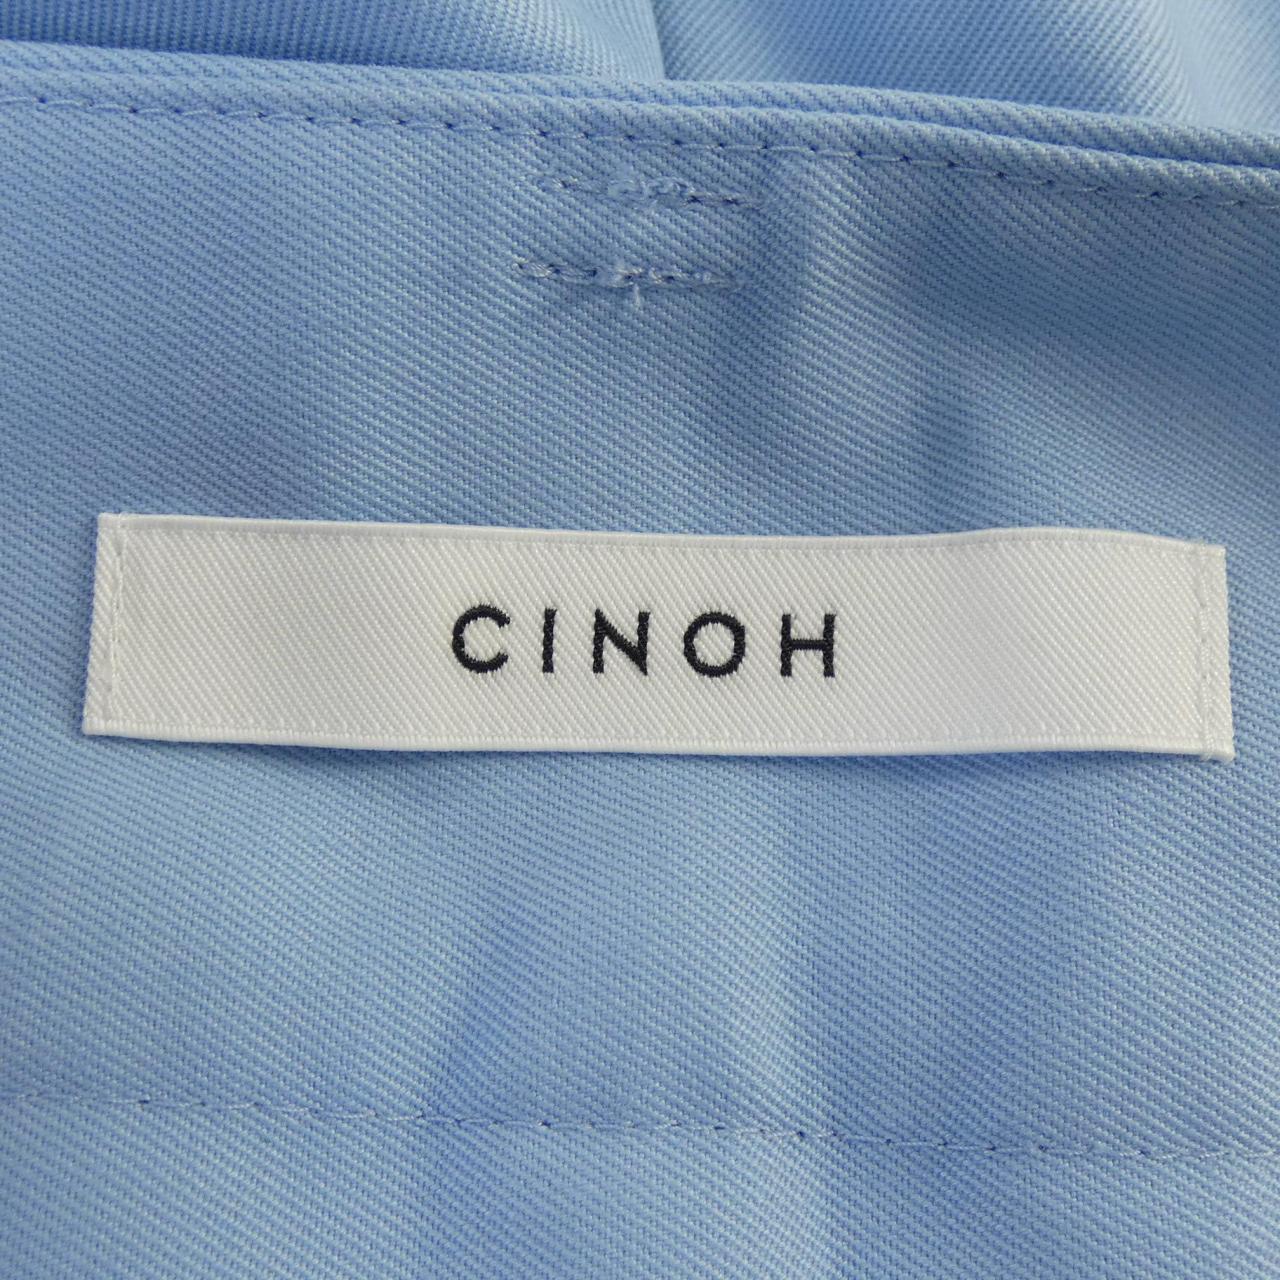 Chino CINOH pants